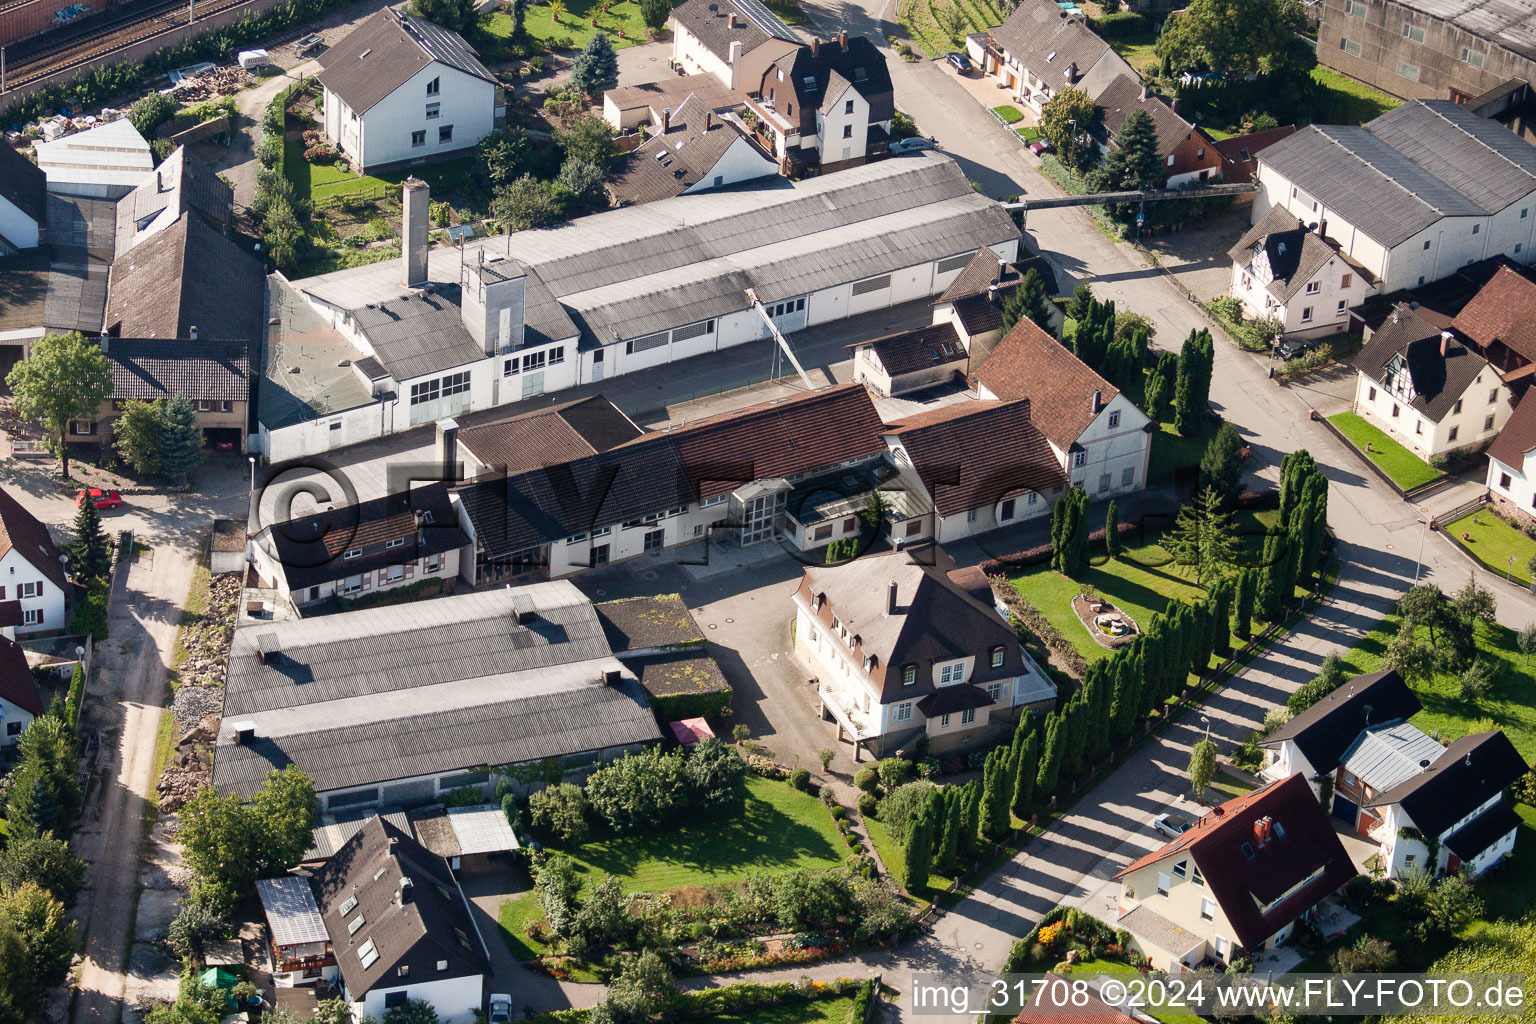 Site de l'usine Muffenrohr GmbH à Ottersweier dans le département Bade-Wurtemberg, Allemagne vu d'un drone